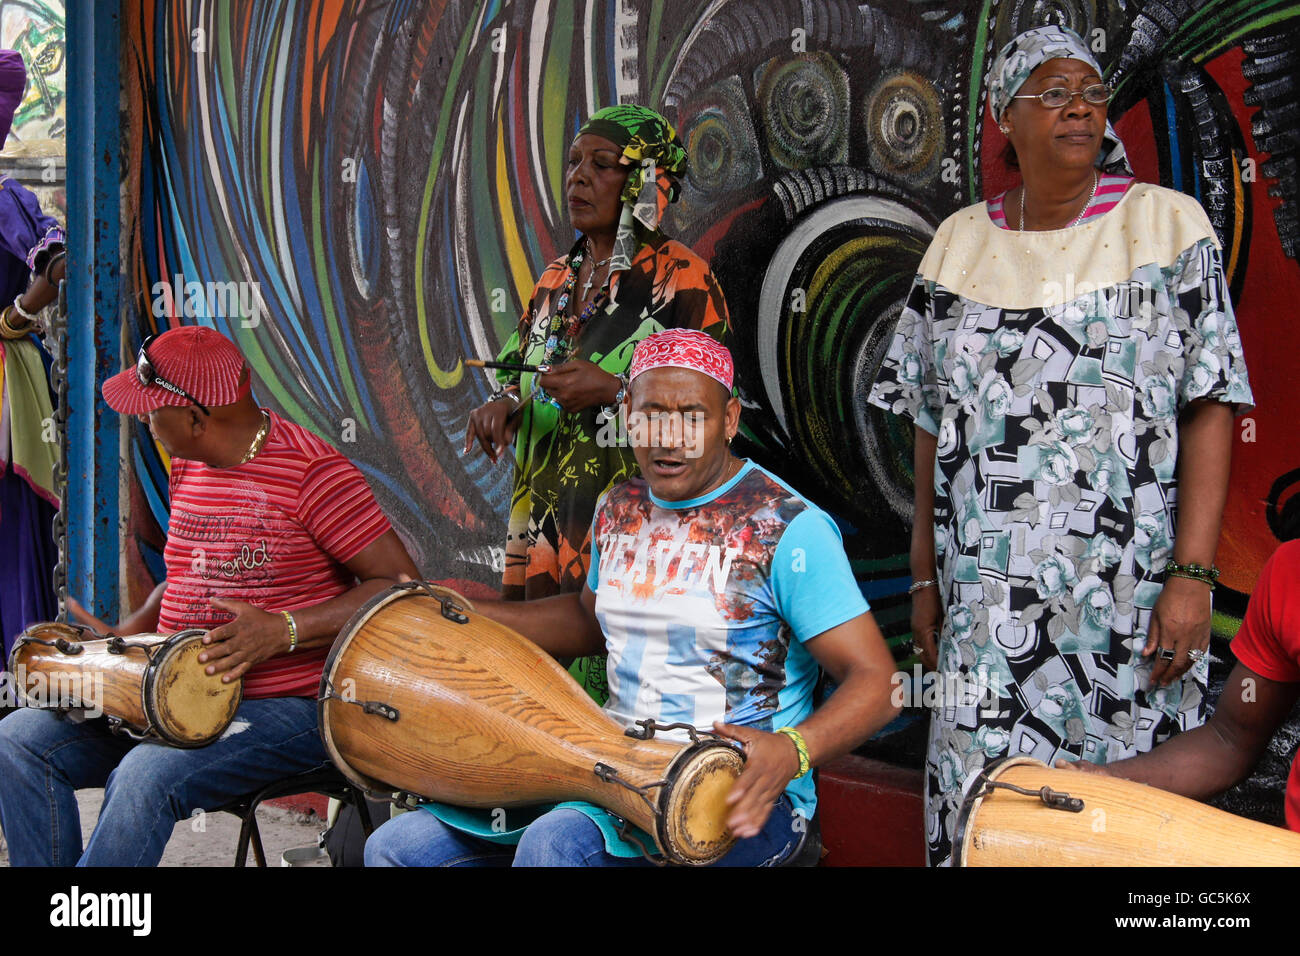 Musiciens à Callejon de Hamel (Hamel's Alley) à Cayo Hueso quartier, La Havane, Cuba Banque D'Images